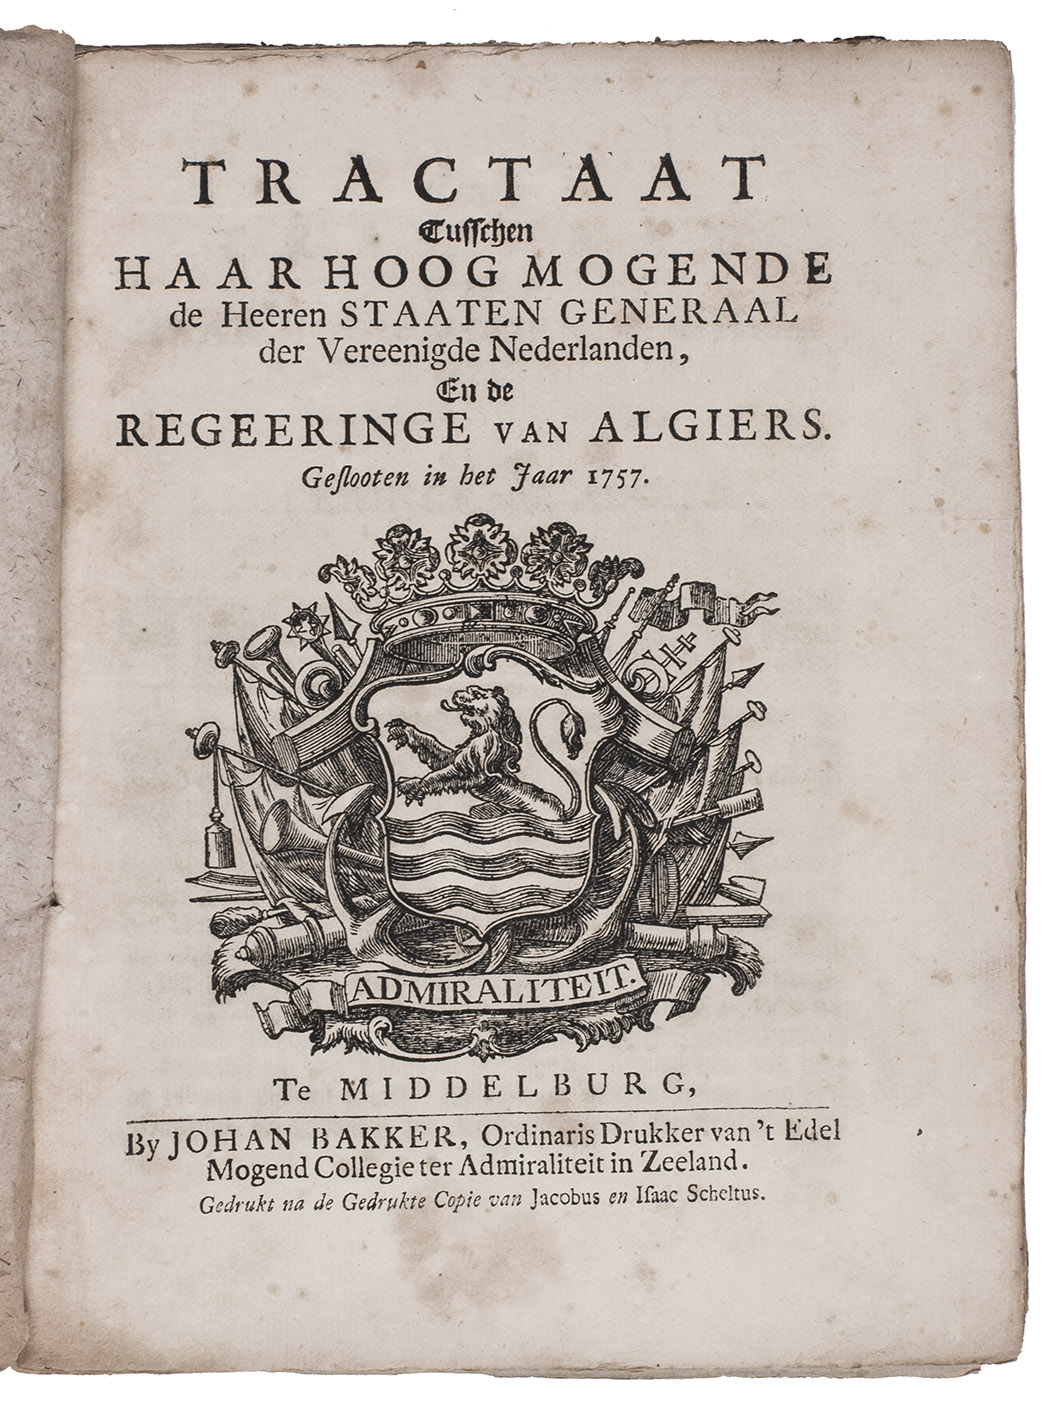 [ALGIERS - TREATY - STATES GENERAL]. - Tractaat tusschen haar hoog mogende de heeren Staaten Generaal ... en de regeeringe van Algiers. Geslooten in het jaar 1757.With: (2) Ampliatie tot het tractaat van vrede tusschen ... de Staaten Generaal ... en den Dey en regeering van Algiers. Exhibitum den 10 October 1760.Middelburg, Johan Bakker, [1758]. 4to. With the woodcut coat of arms of the Dutch admiralty on the title-page. Contemporary marbled wrappers.